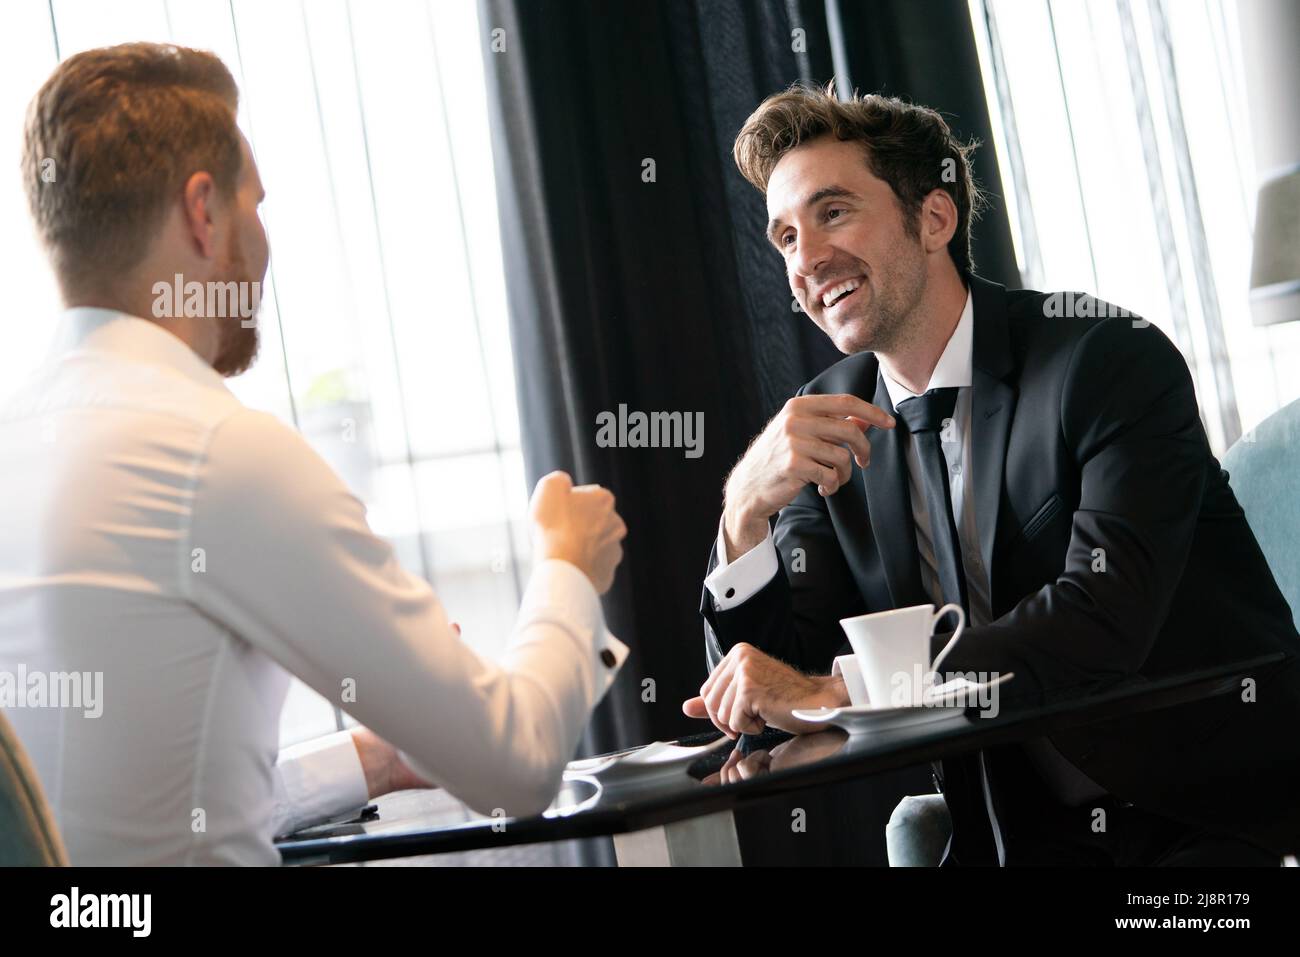 Businessman smiling réussie tout en discutant avec son partenaire au cours de réunion à Pause café Banque D'Images